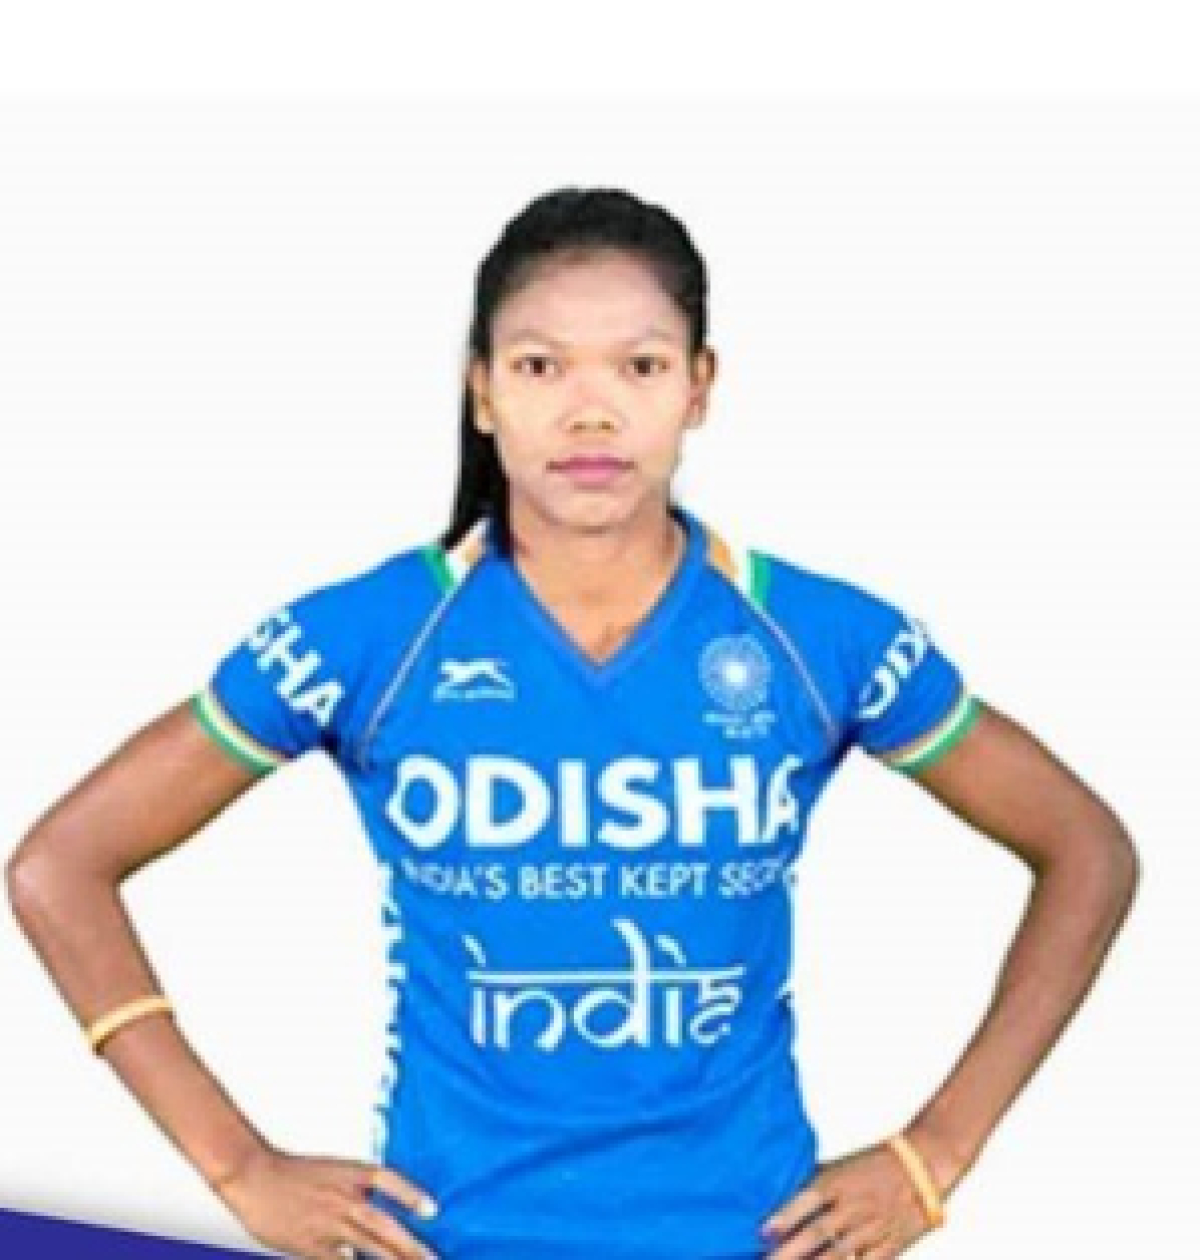 मां-बहन ने जिसकी खातिर दूसरों के घरों में बर्तन मांजे, वह सलीमा बन गईं इंडियन महिला हॉकी टीम की नई कैप्टन